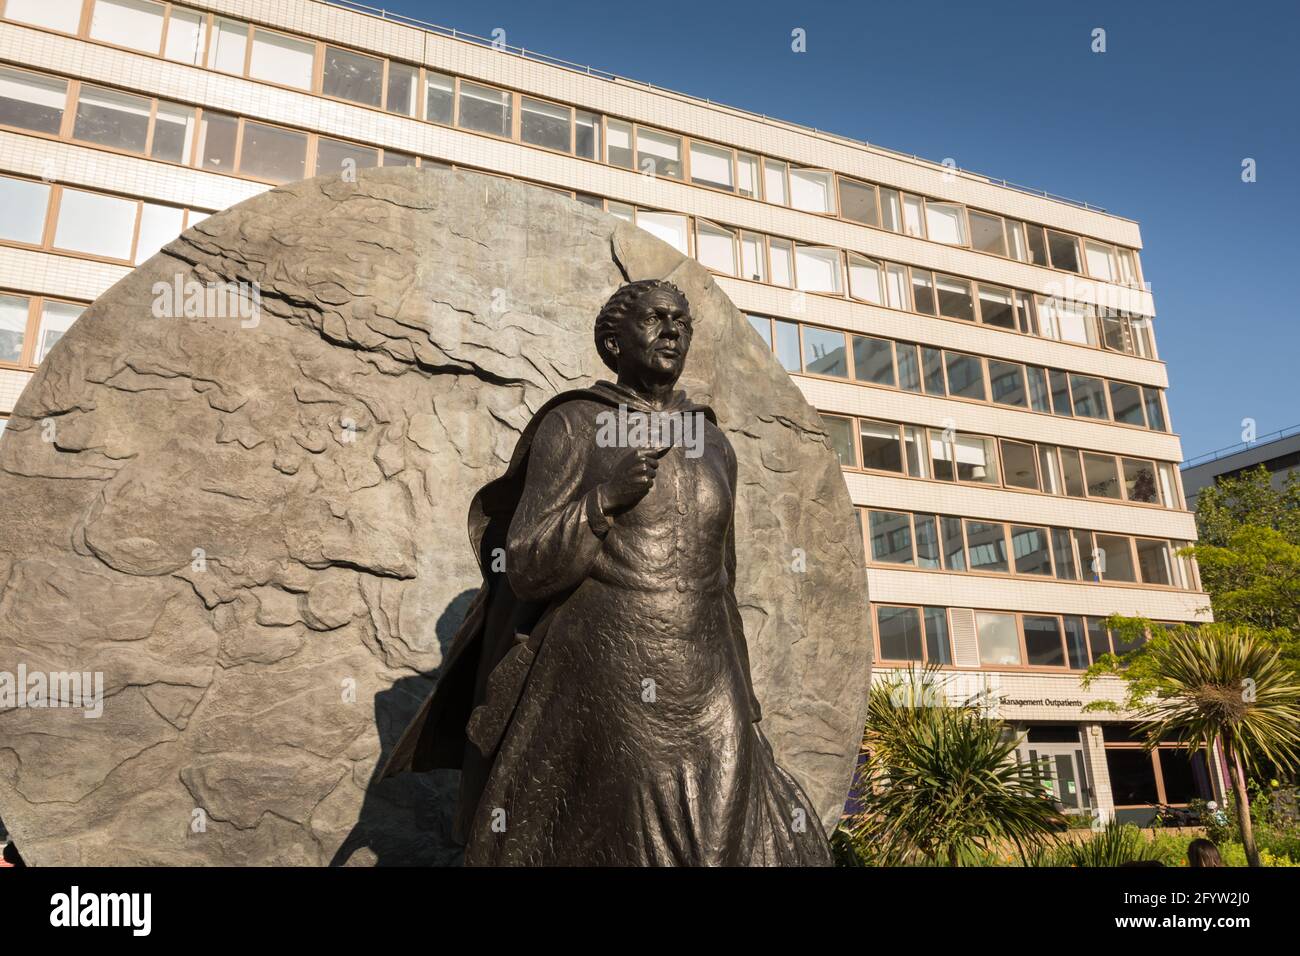 Eine Bronzestatue der Krimkriegsheldin Mary Seacole, von Martin Jennings, vor dem St. Thomas’ Hospital im Zentrum von London, England, Großbritannien Stockfoto